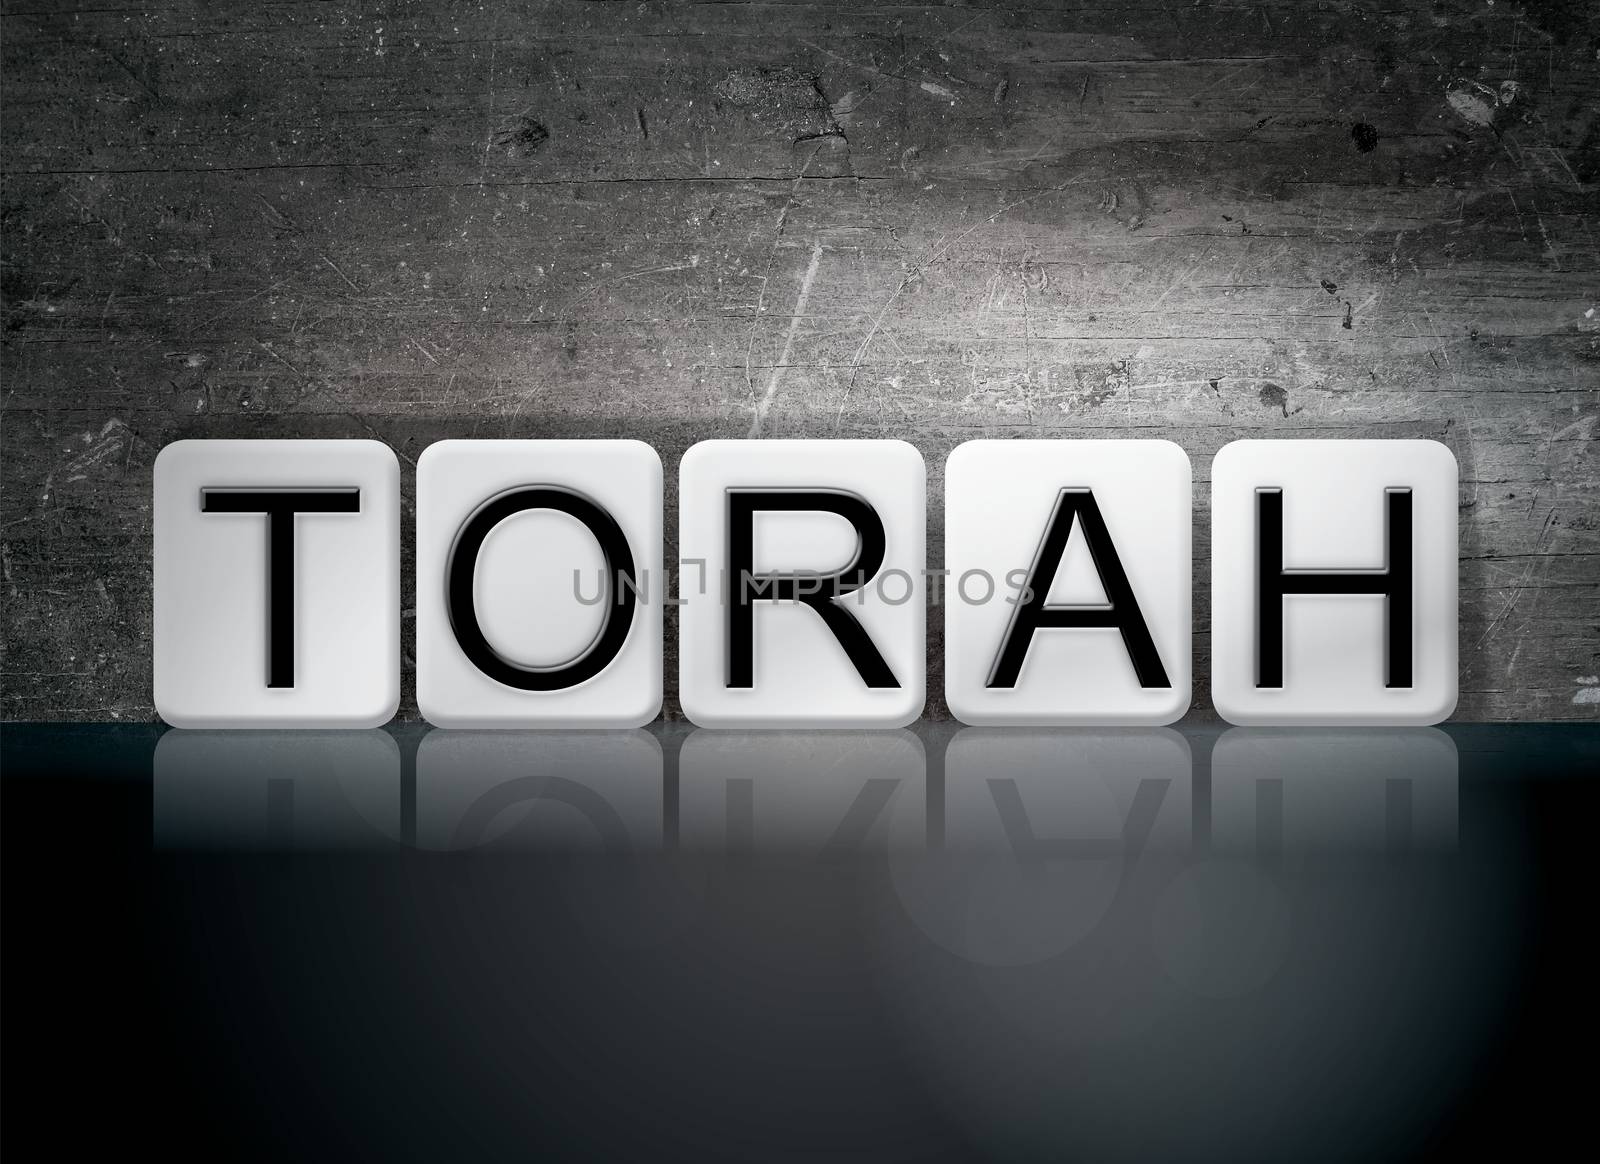 The word "Torah" written in white tiles against a dark vintage grunge background.